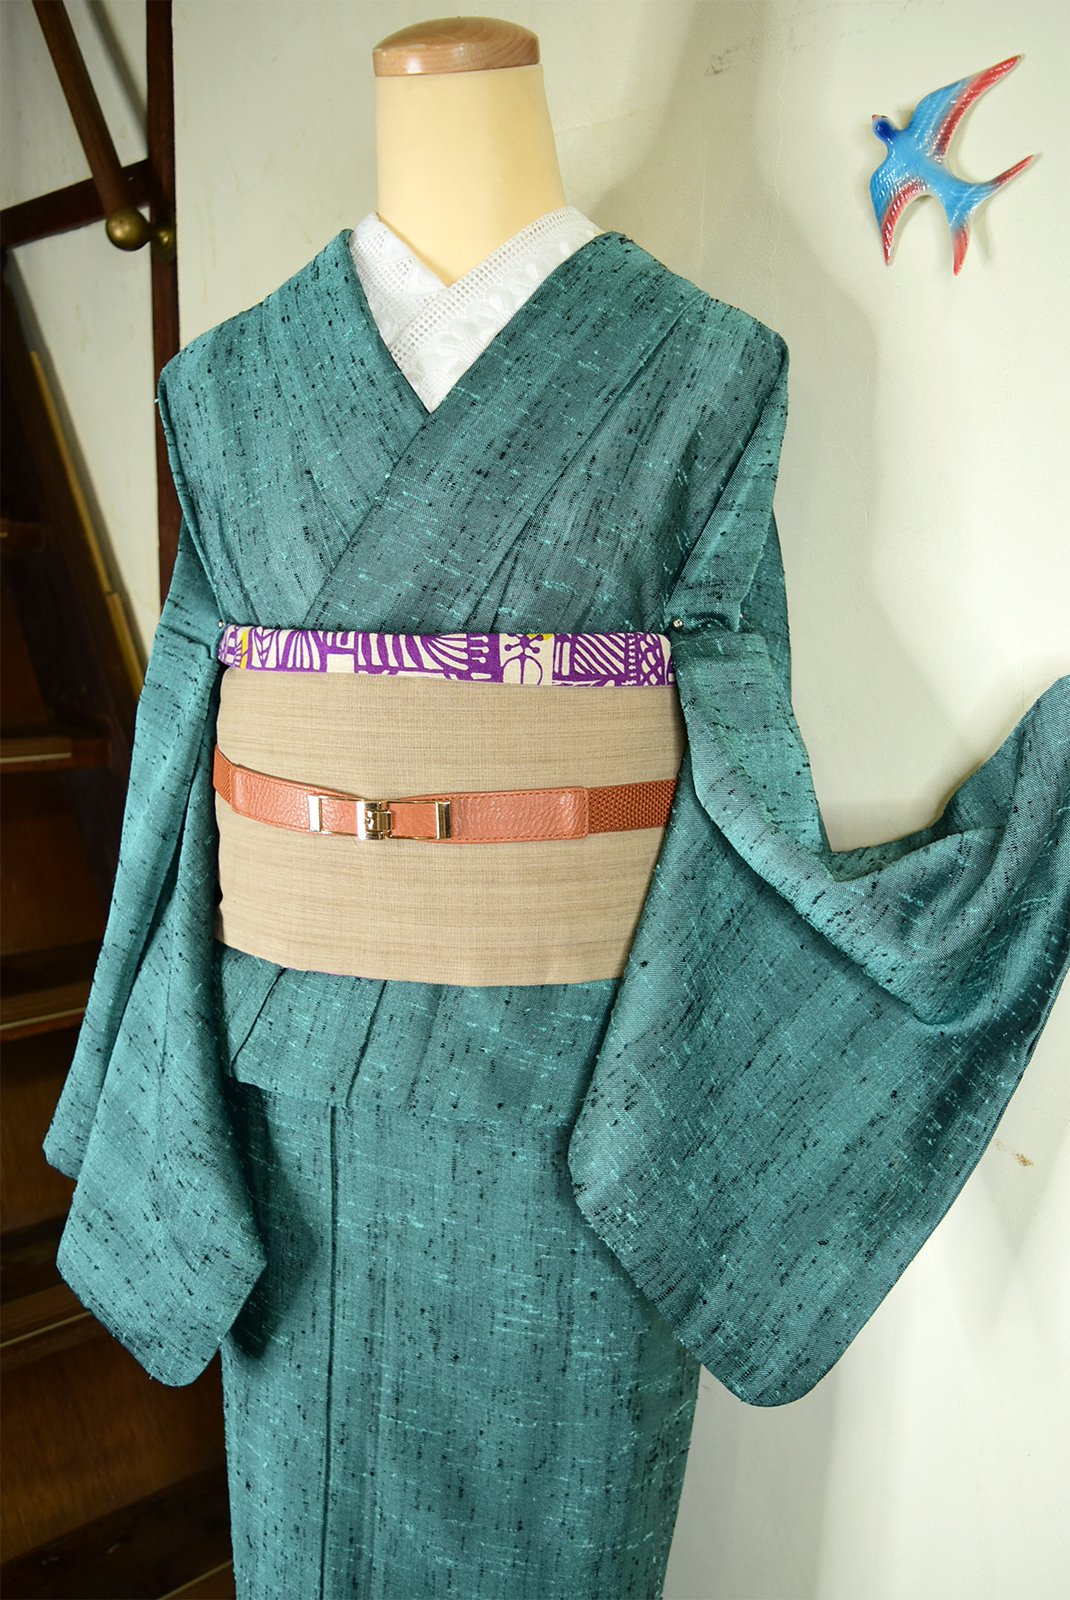 ティールグリーンのストライプ美しい化繊紬の夏着物 - アンティーク